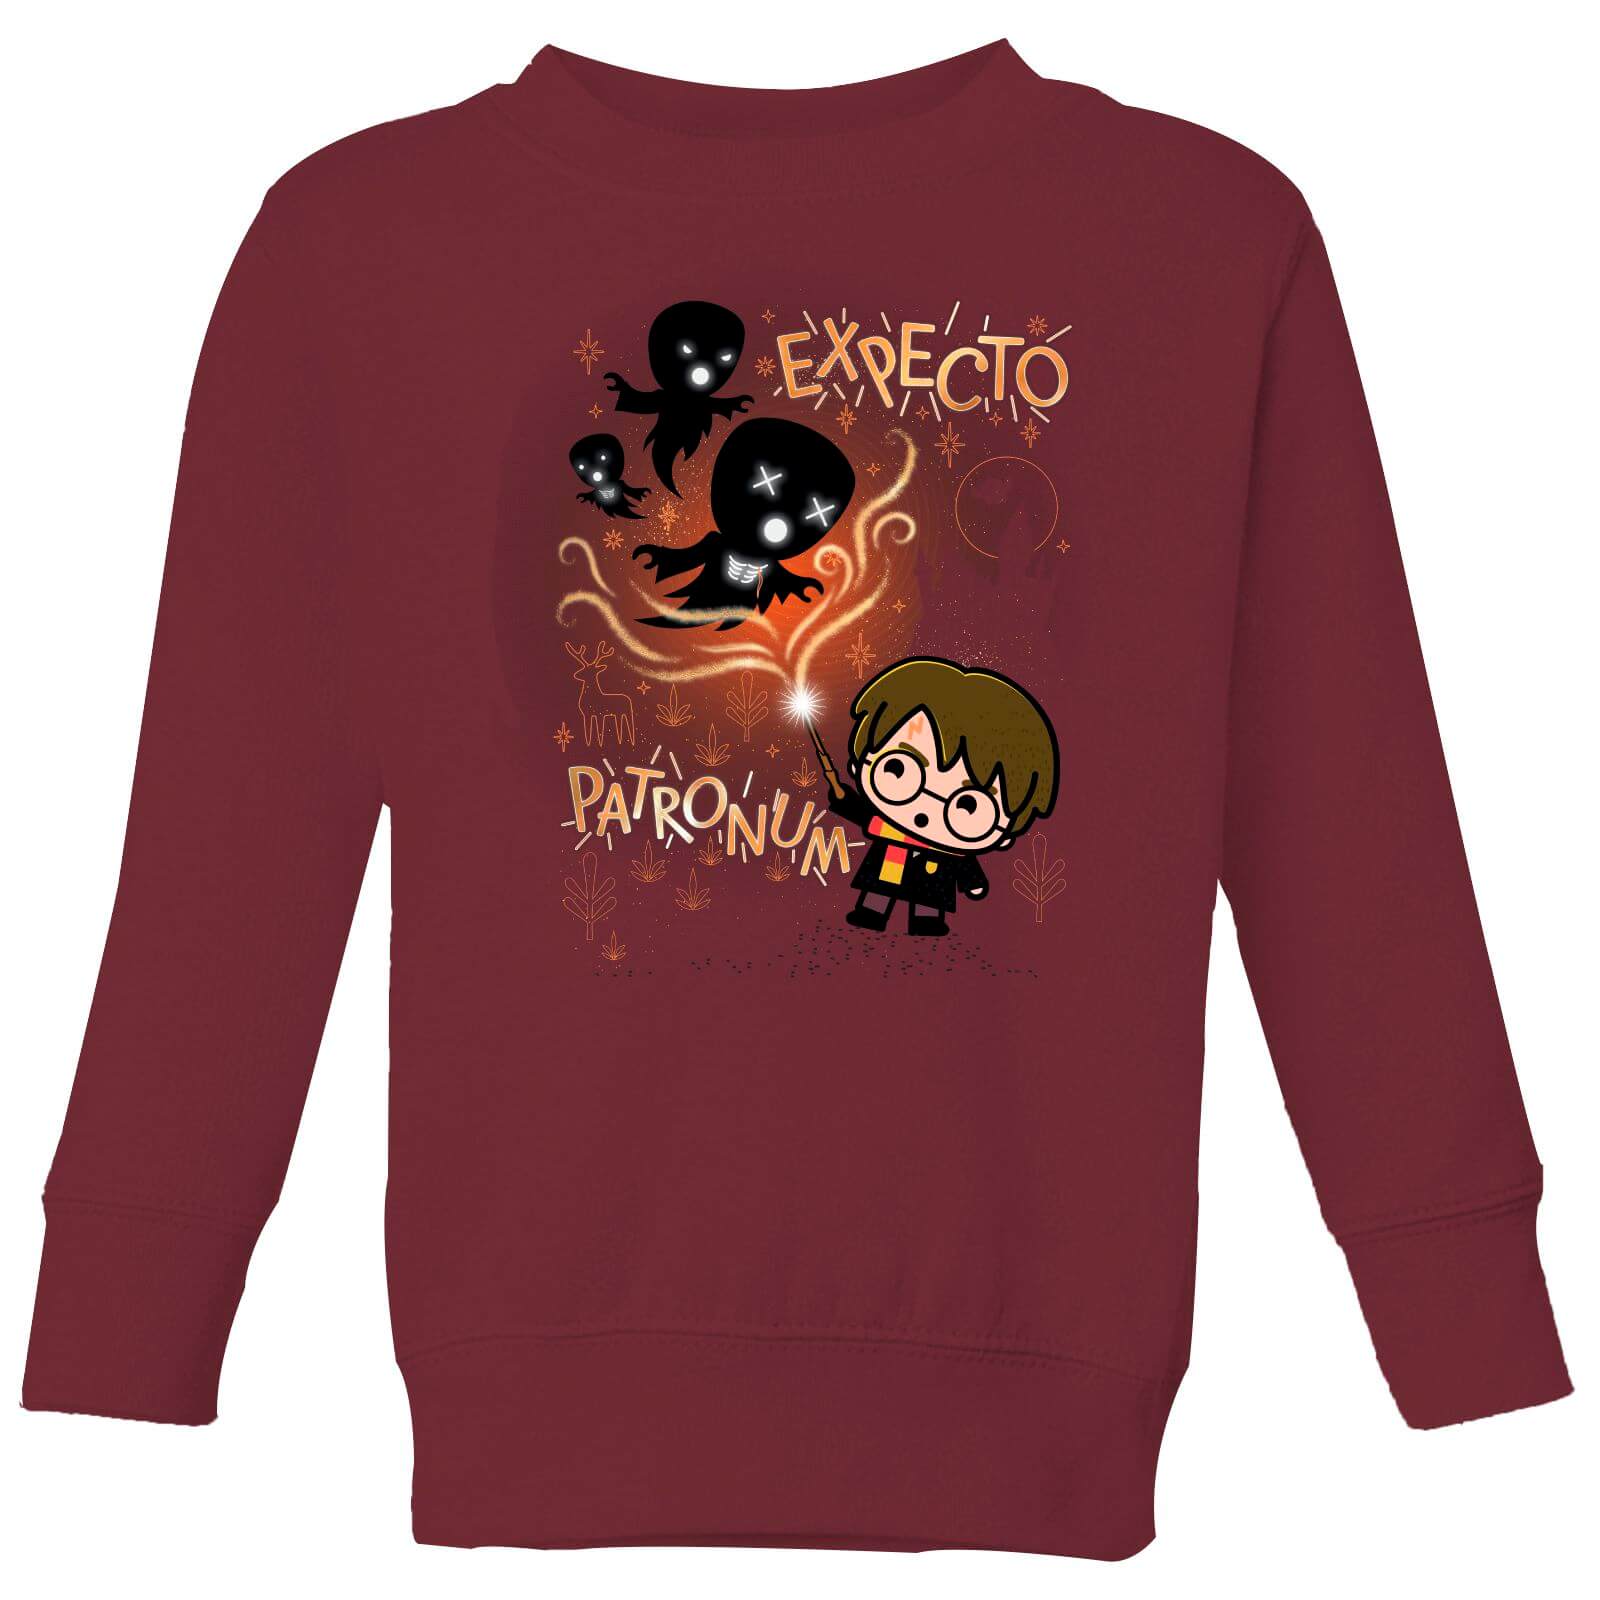 Harry Potter Kids Expecto Patronum Kids' Sweatshirt - Burgundy - 3-4 Years